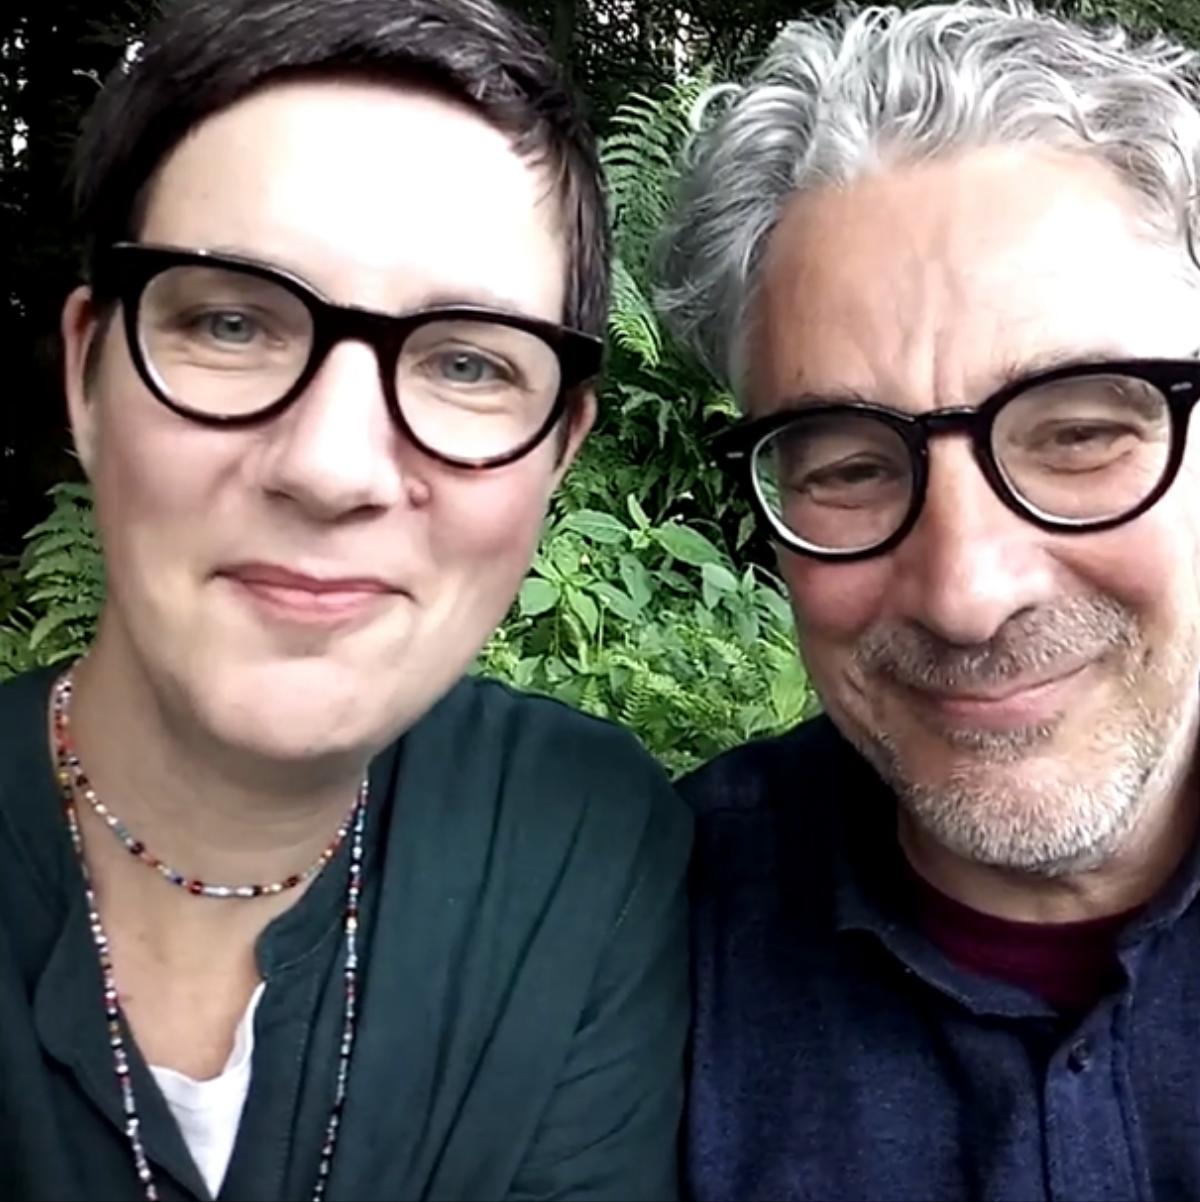 ANIMAL AGENTS: News Ilona und Marek drehen ein Instagram-Video